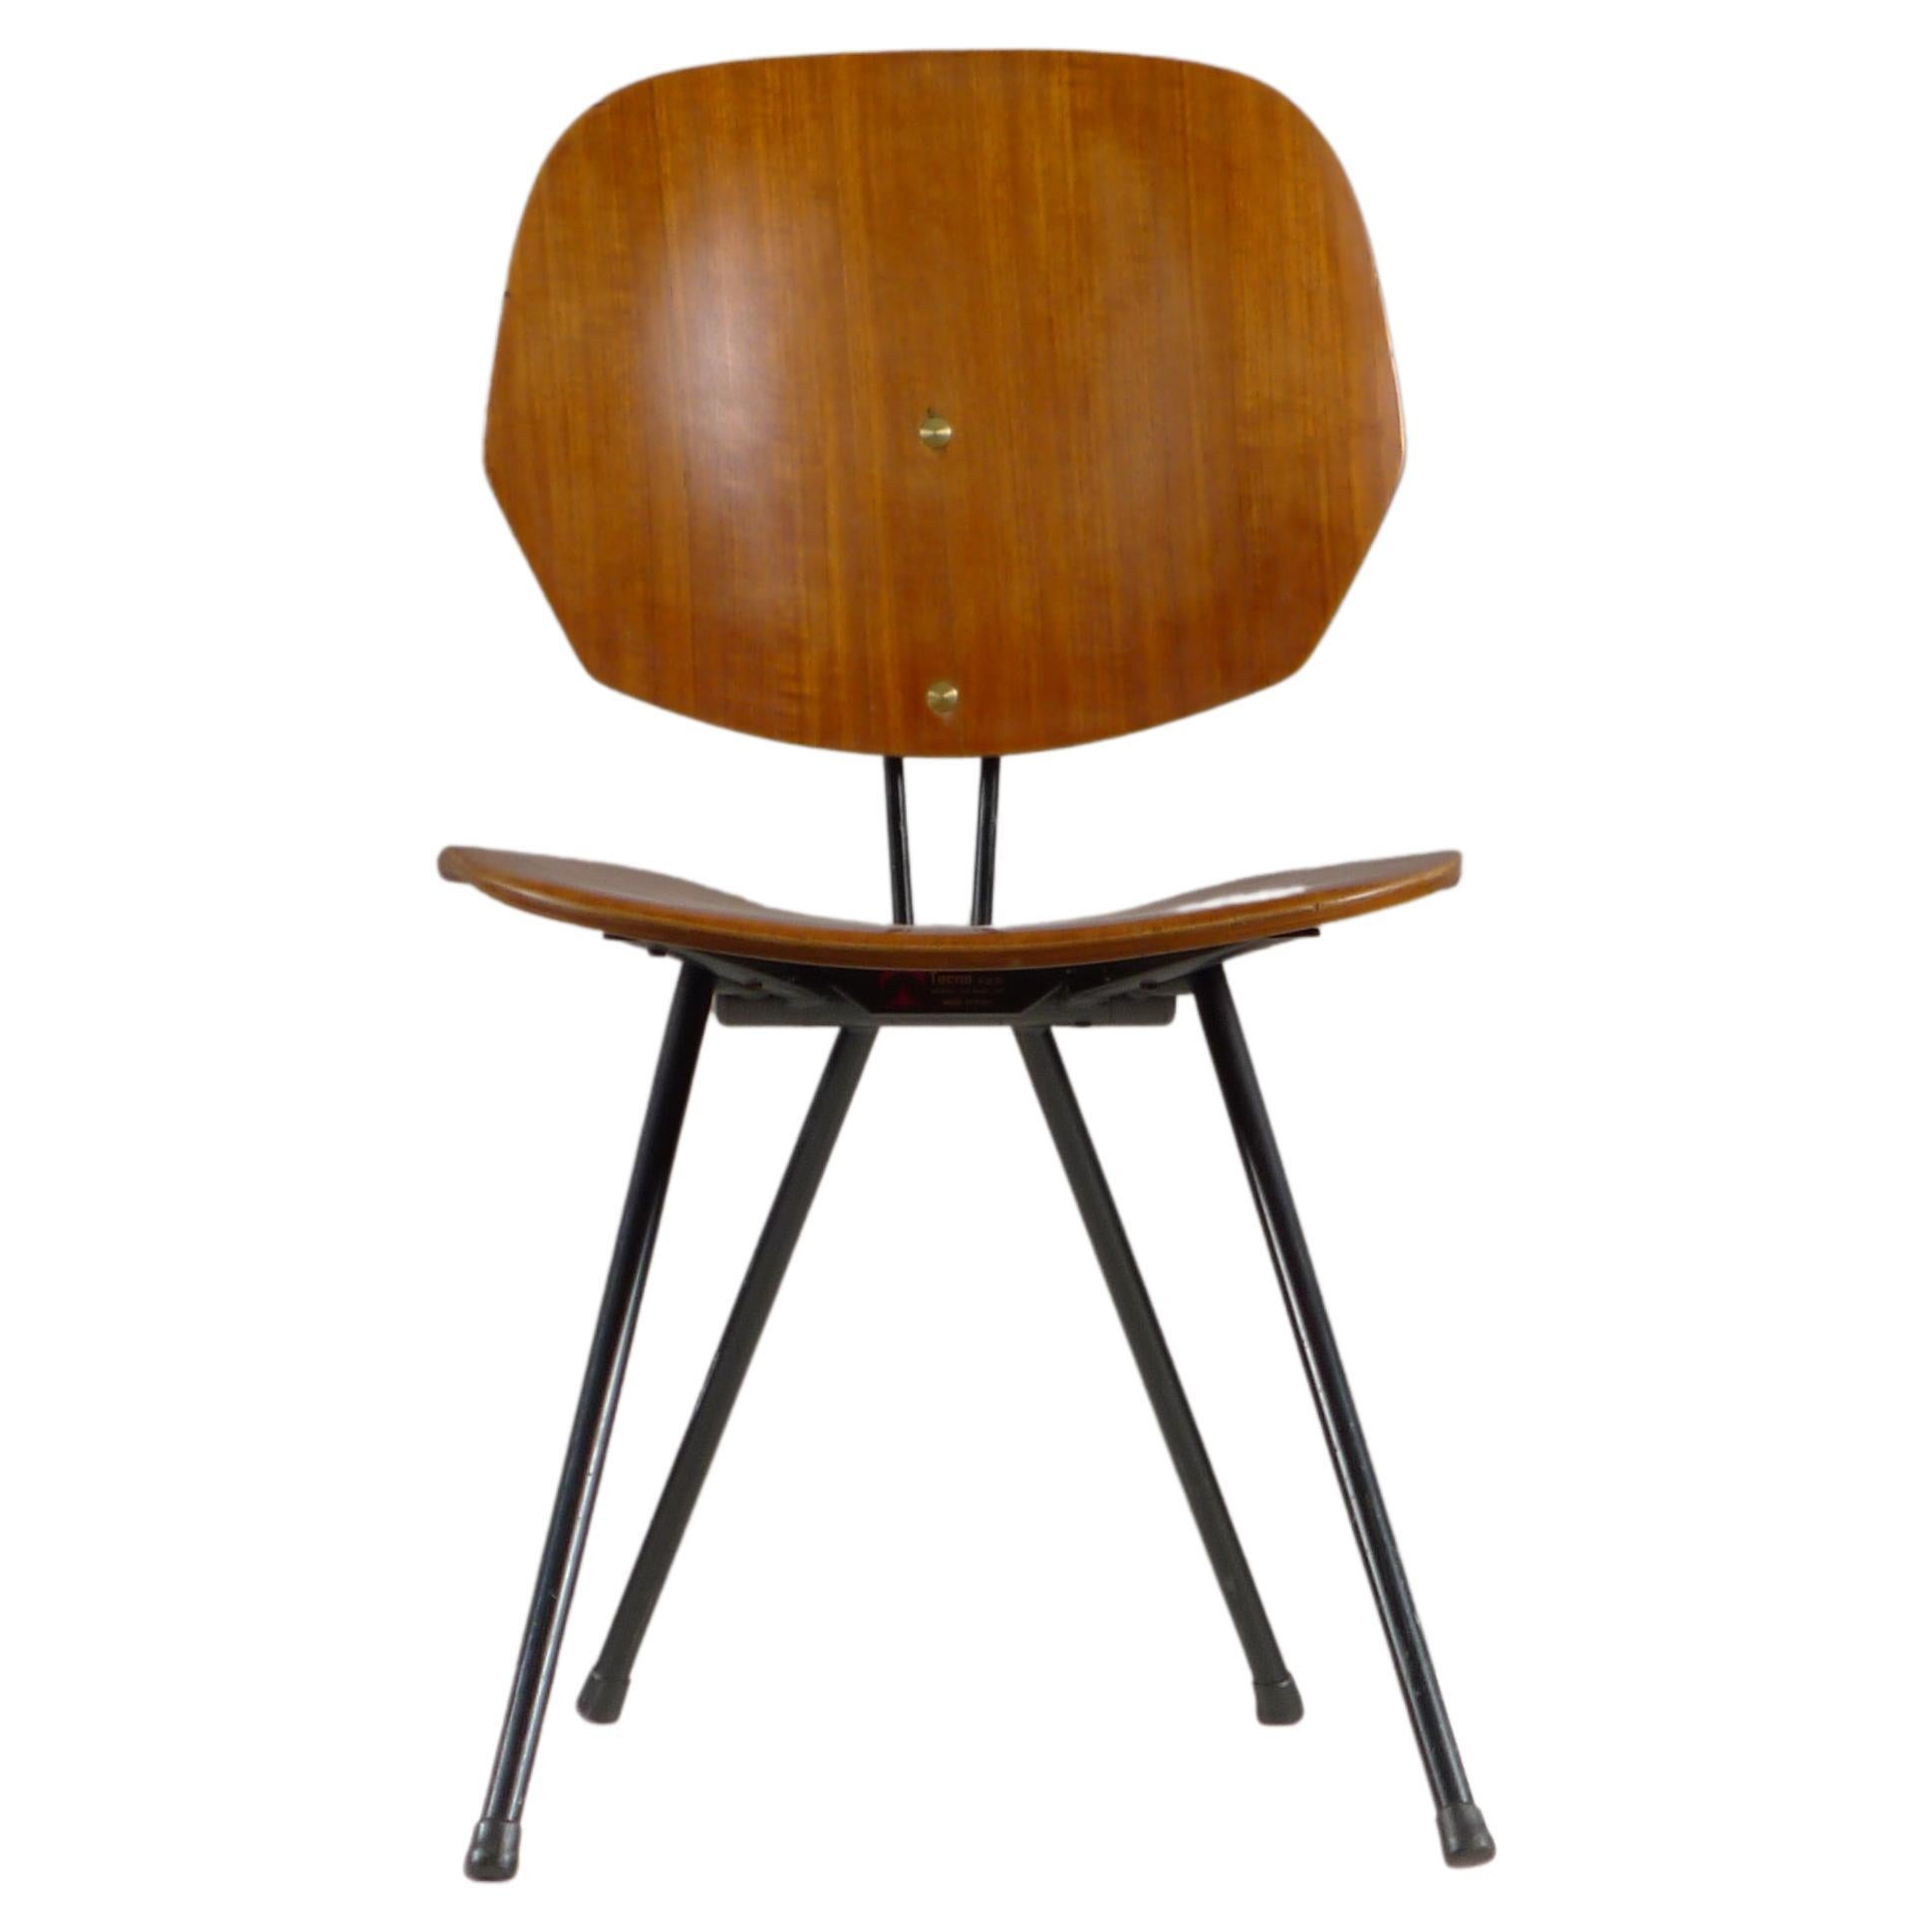 Osvaldo Borsani for Tecno, Italy, S88 Folding Chair, Labelled by Maker, 1950